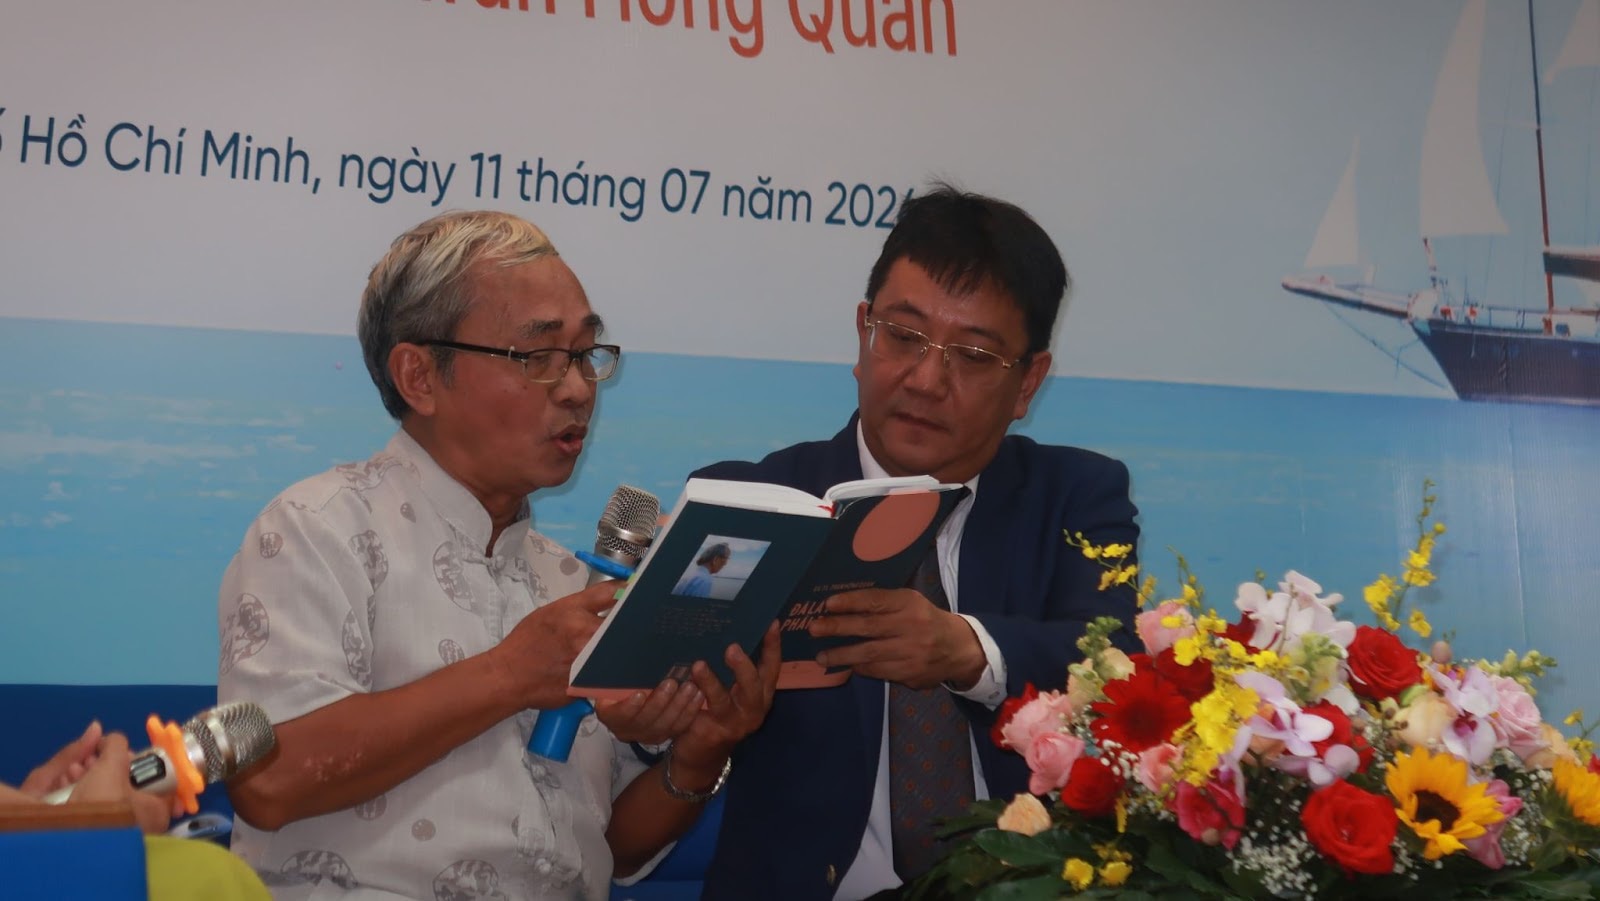 Nhà văn, nhà báo Trần Quốc Toàn (trái) đọc những trang hồi ký xúc động của giáo sư Trần Hồng Quân - Ảnh: MINH TÂN